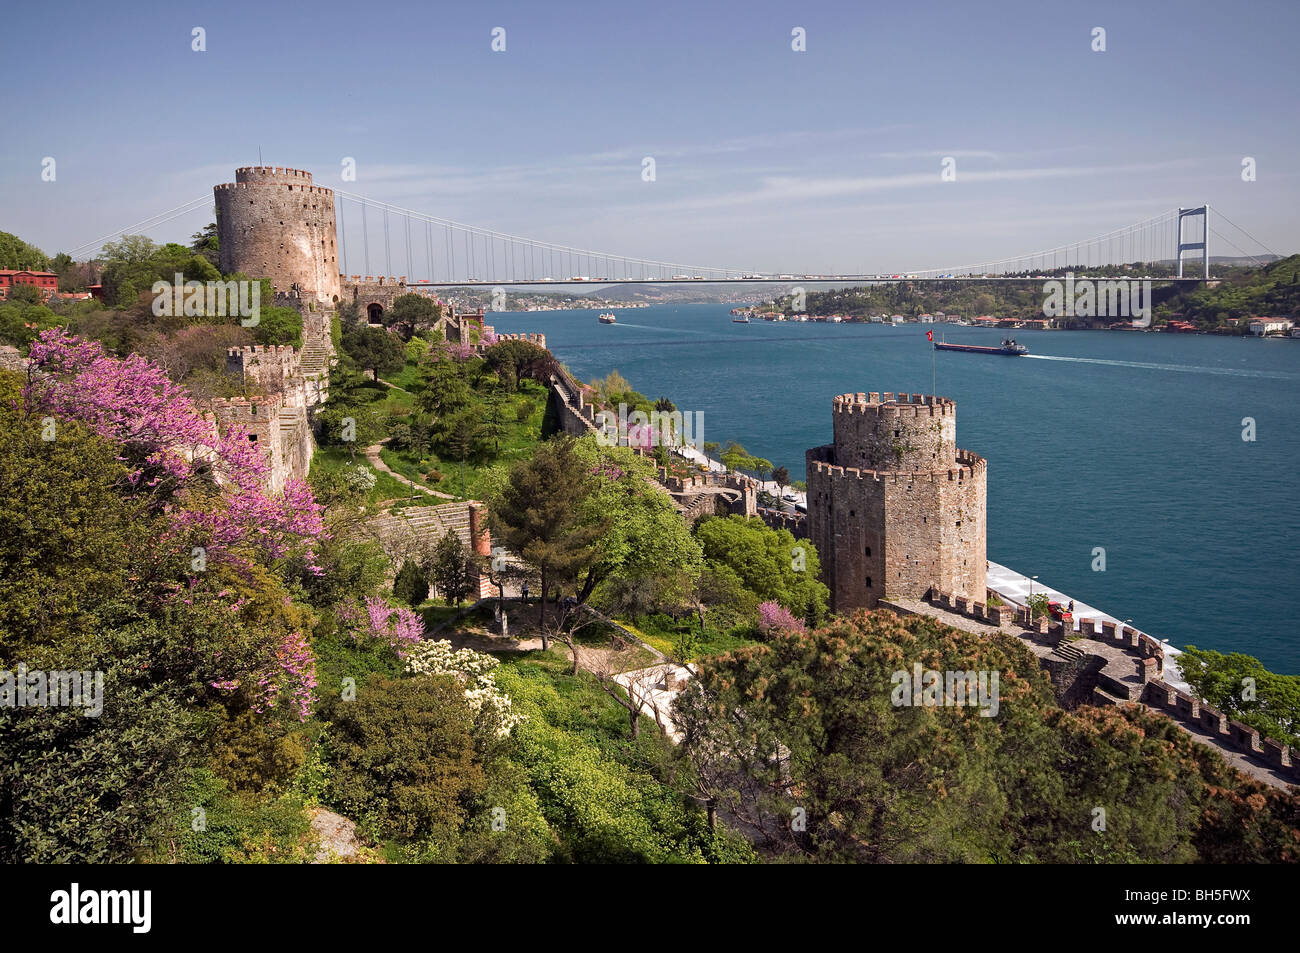 Hisar la forteresse et le pont Fatih Sultan Mehmet, Bosphorus Istanbul Turquie Banque D'Images